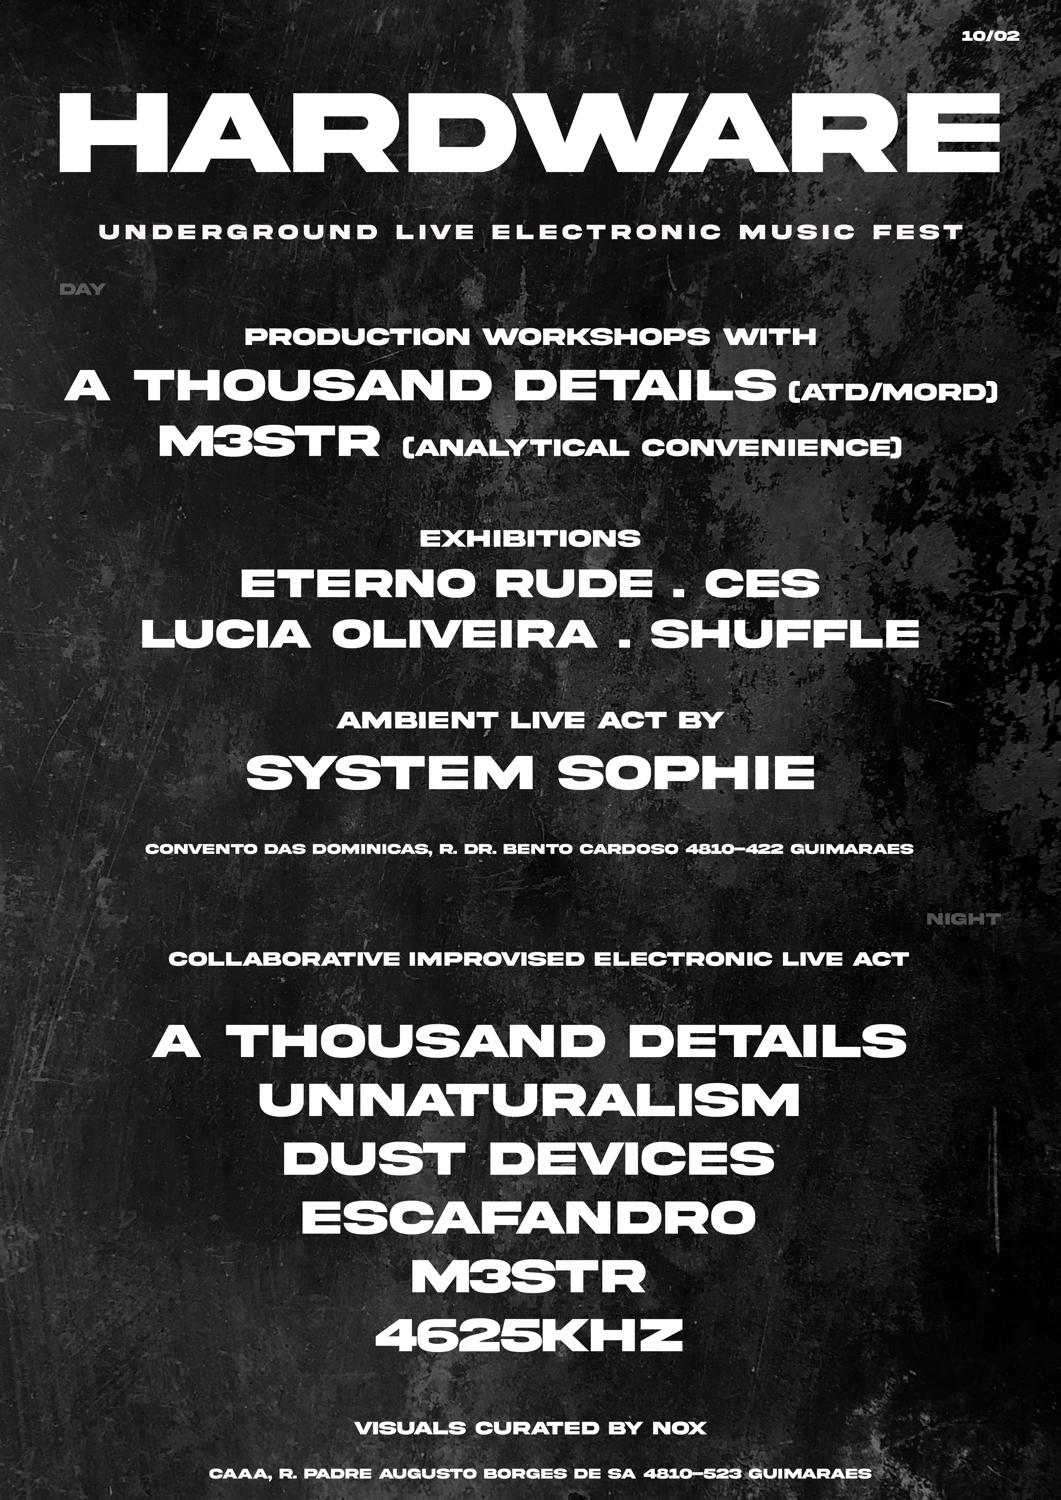 Hardware - Underground Live Electronic Music Fest